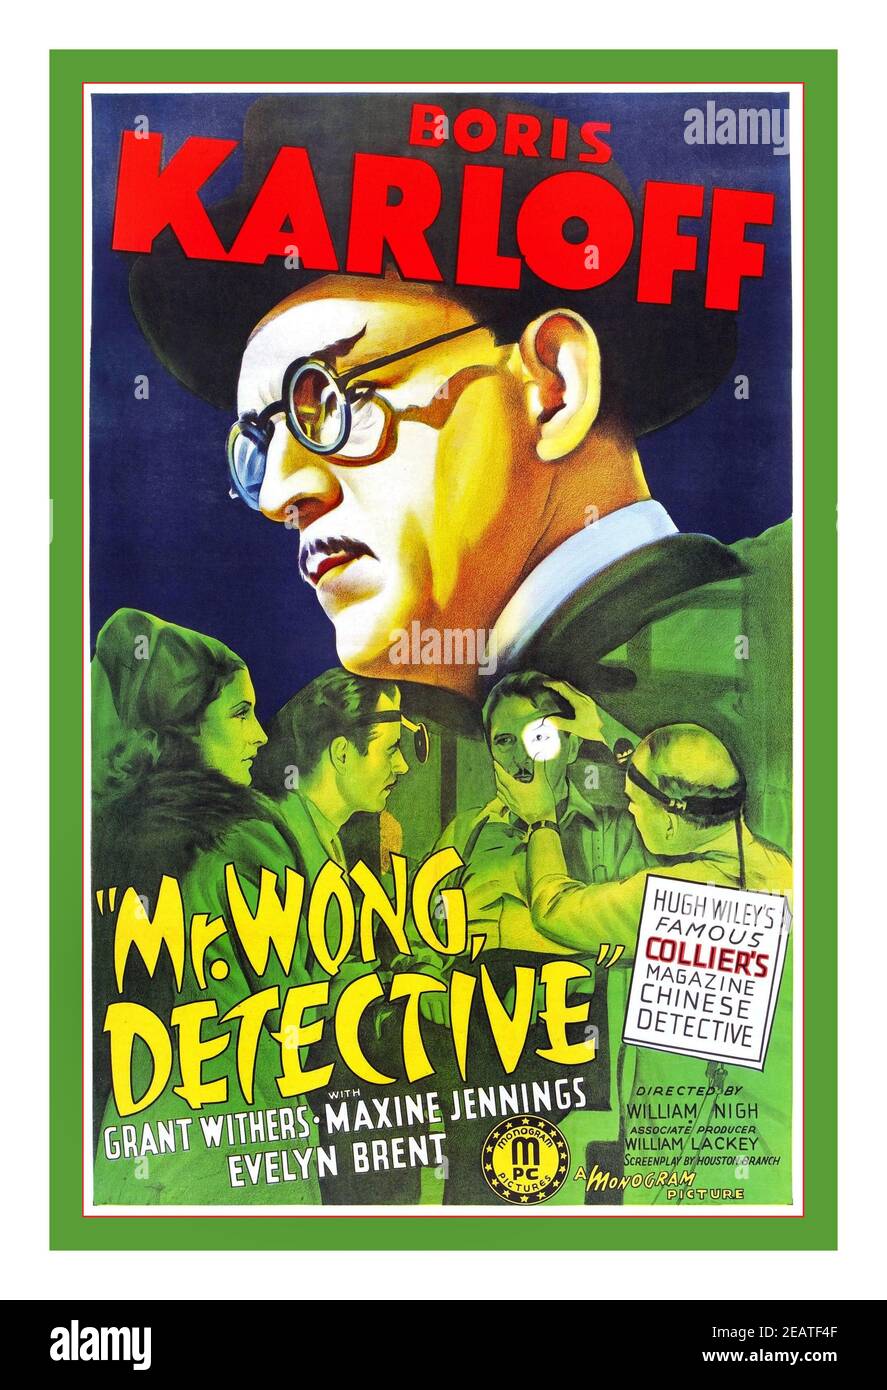 MR WONG DETECTIVE Vintage 1930er Film Movie Poster 'Mr Wong Detective' mit Boris Karloff mit Grant Withers, Maxine Jennings und Evelyn Brent. Regie: William nigh. Mr. Wong, Detective ist ein amerikanischer Kriminalfilm von 1938, der von William Nagh gedreht wurde und Boris Karloff in seinem ersten Auftritt als Mr. Wong darstellte. Stockfoto